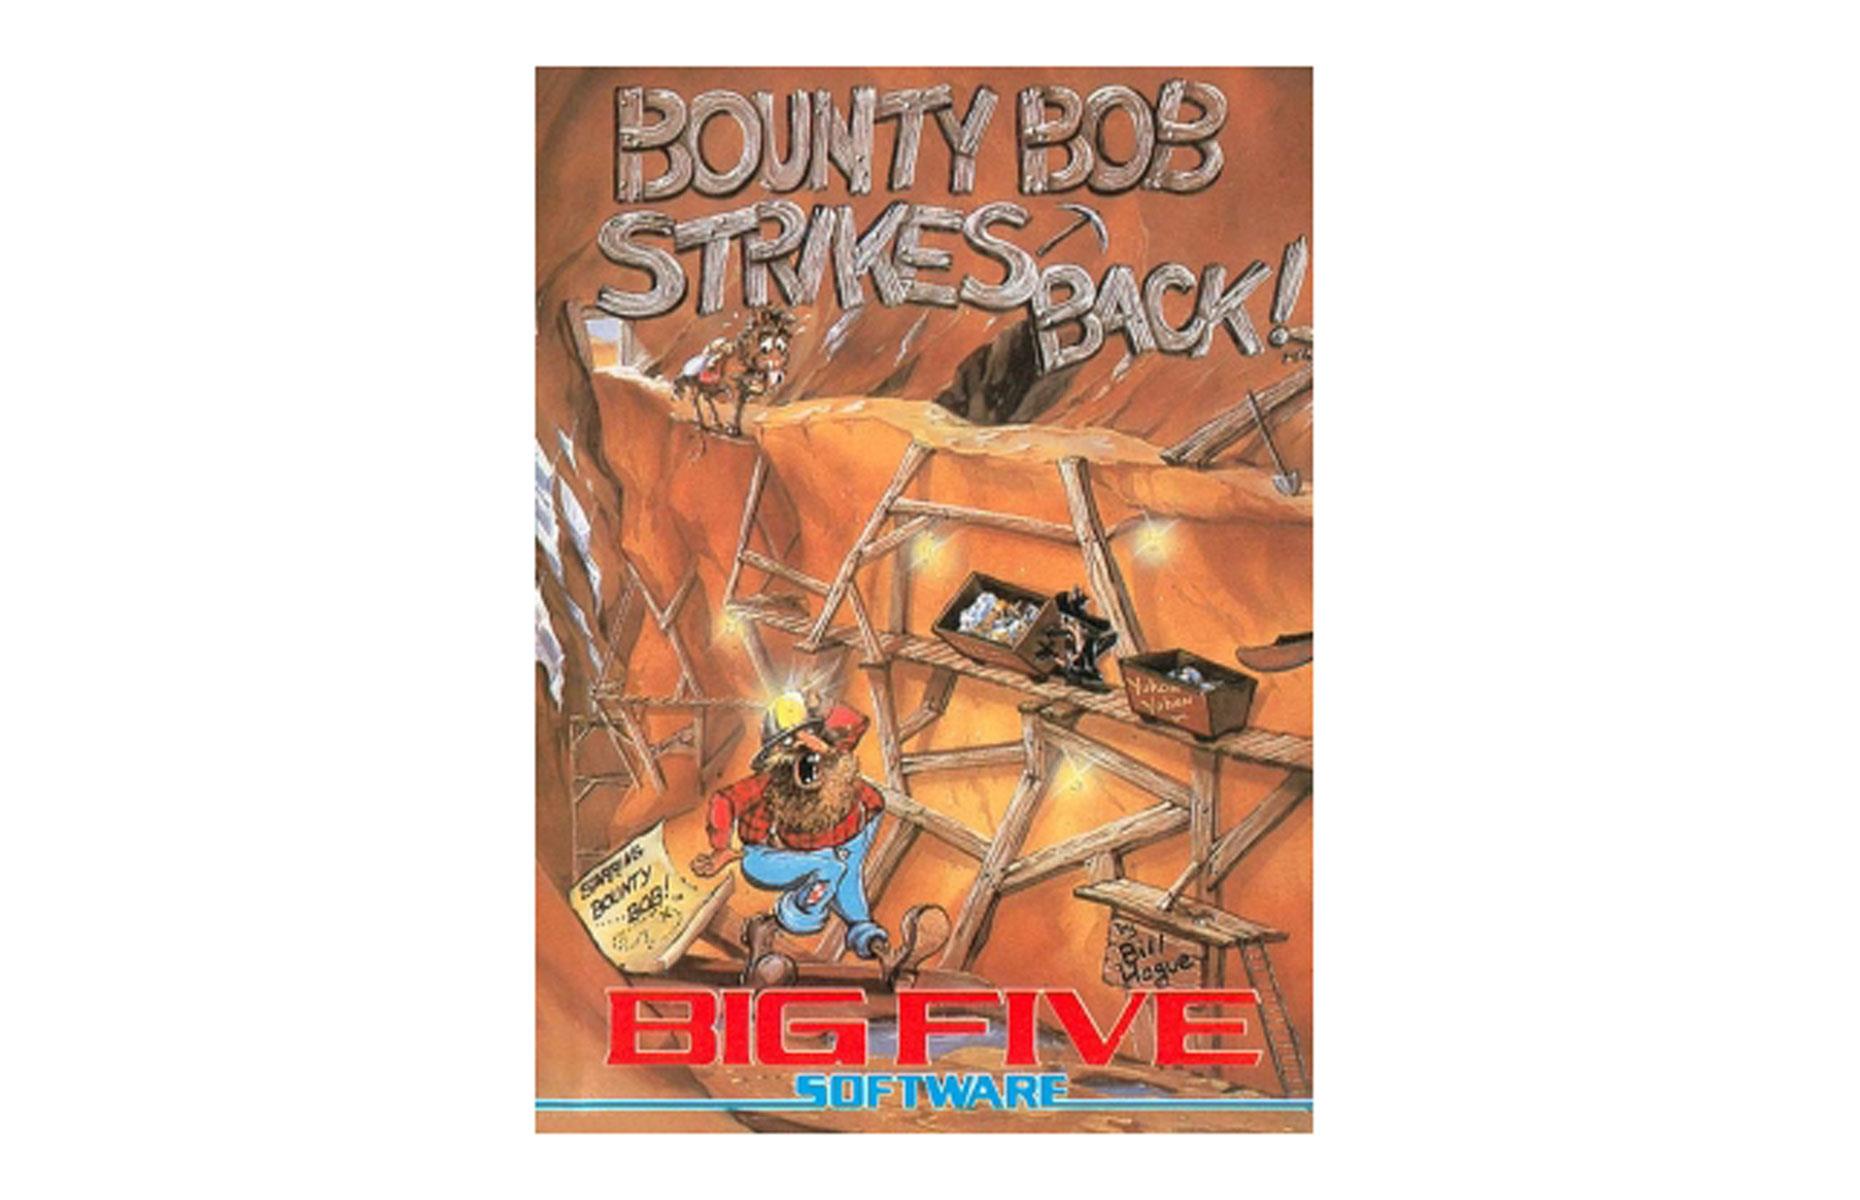 Bounty Bob Strikes Back! (Big Five Software) for Atari 5200, 1984: up to $900 (£650)